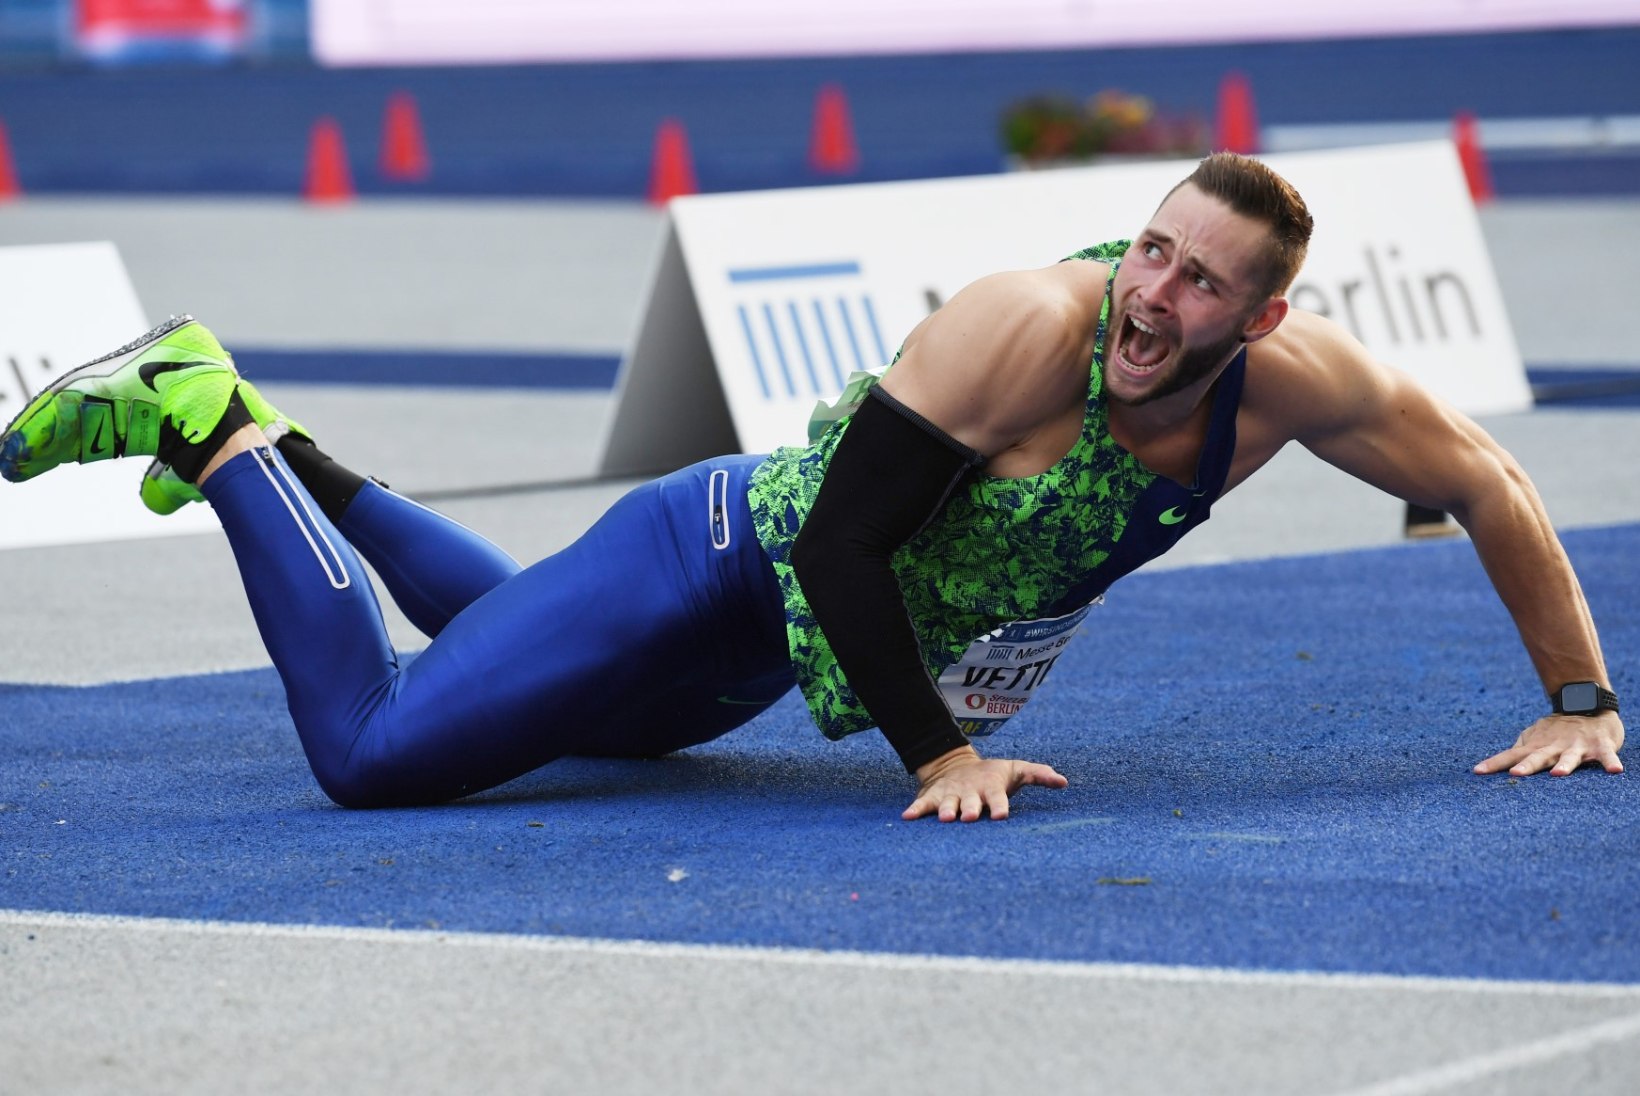 EESMÄRGID PAIGAS: Vetter võtab sihikule olümpiakulla ja Železny maailmarekordi